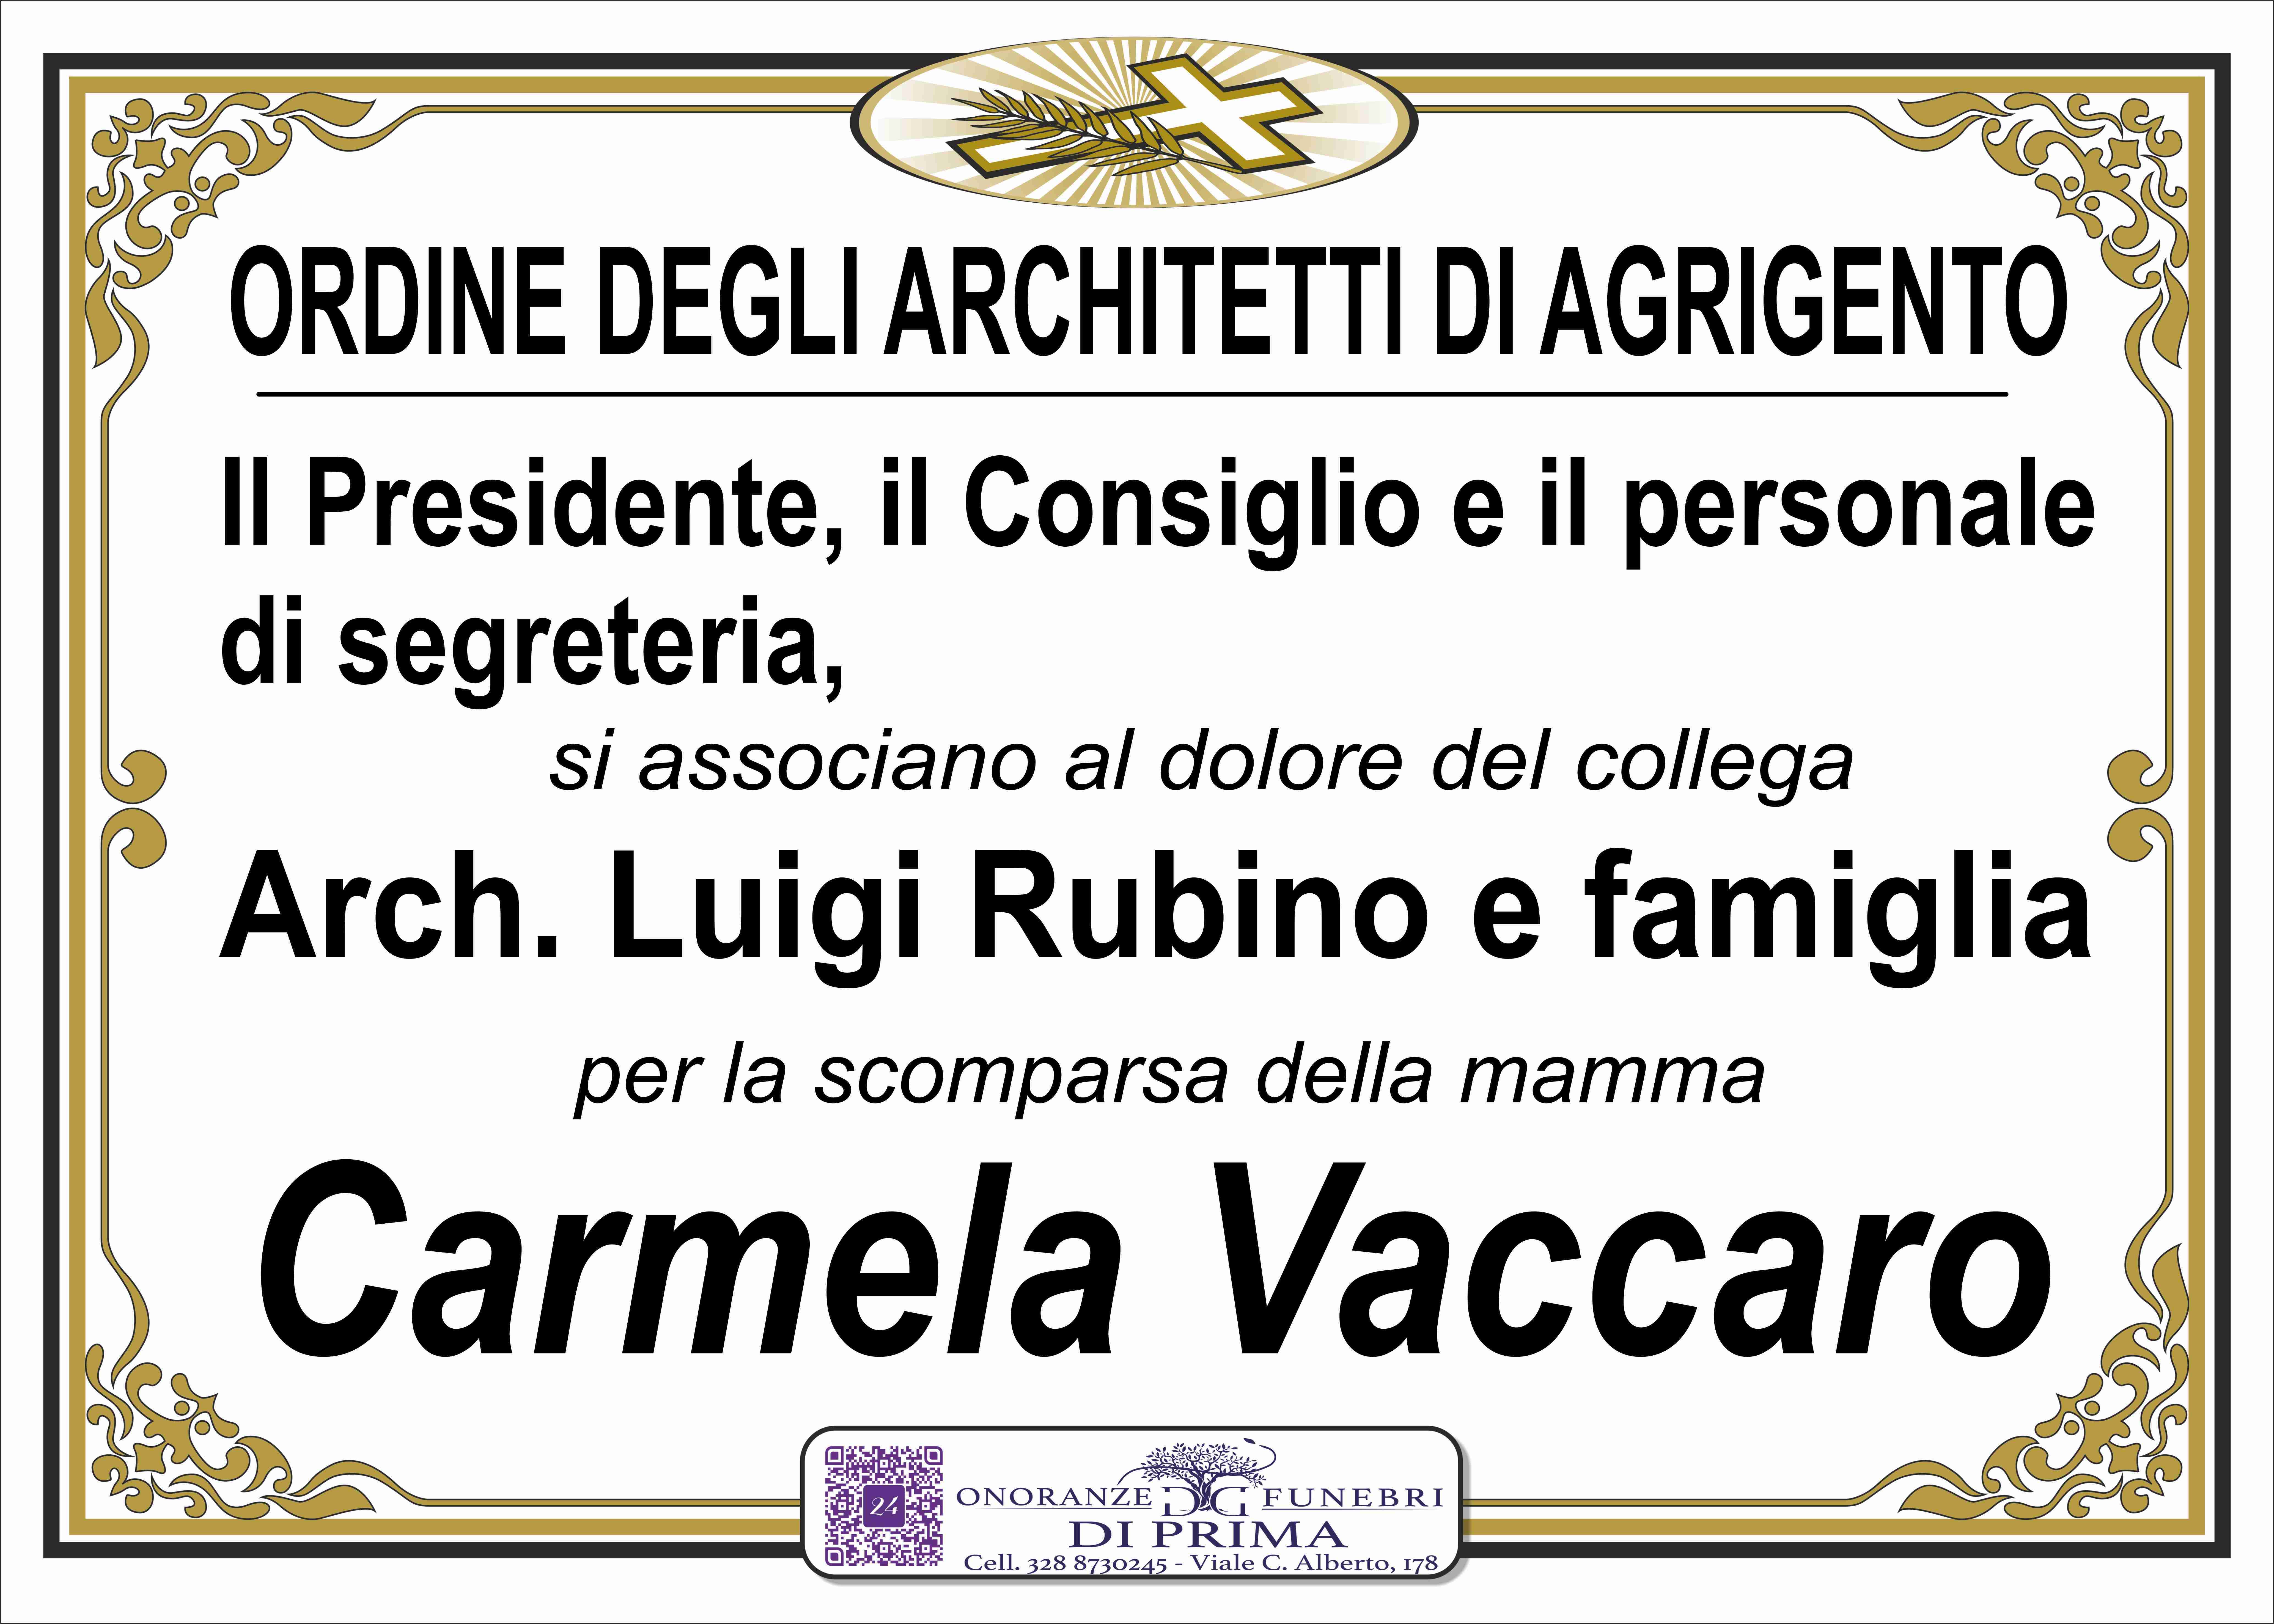 Carmela Vaccaro